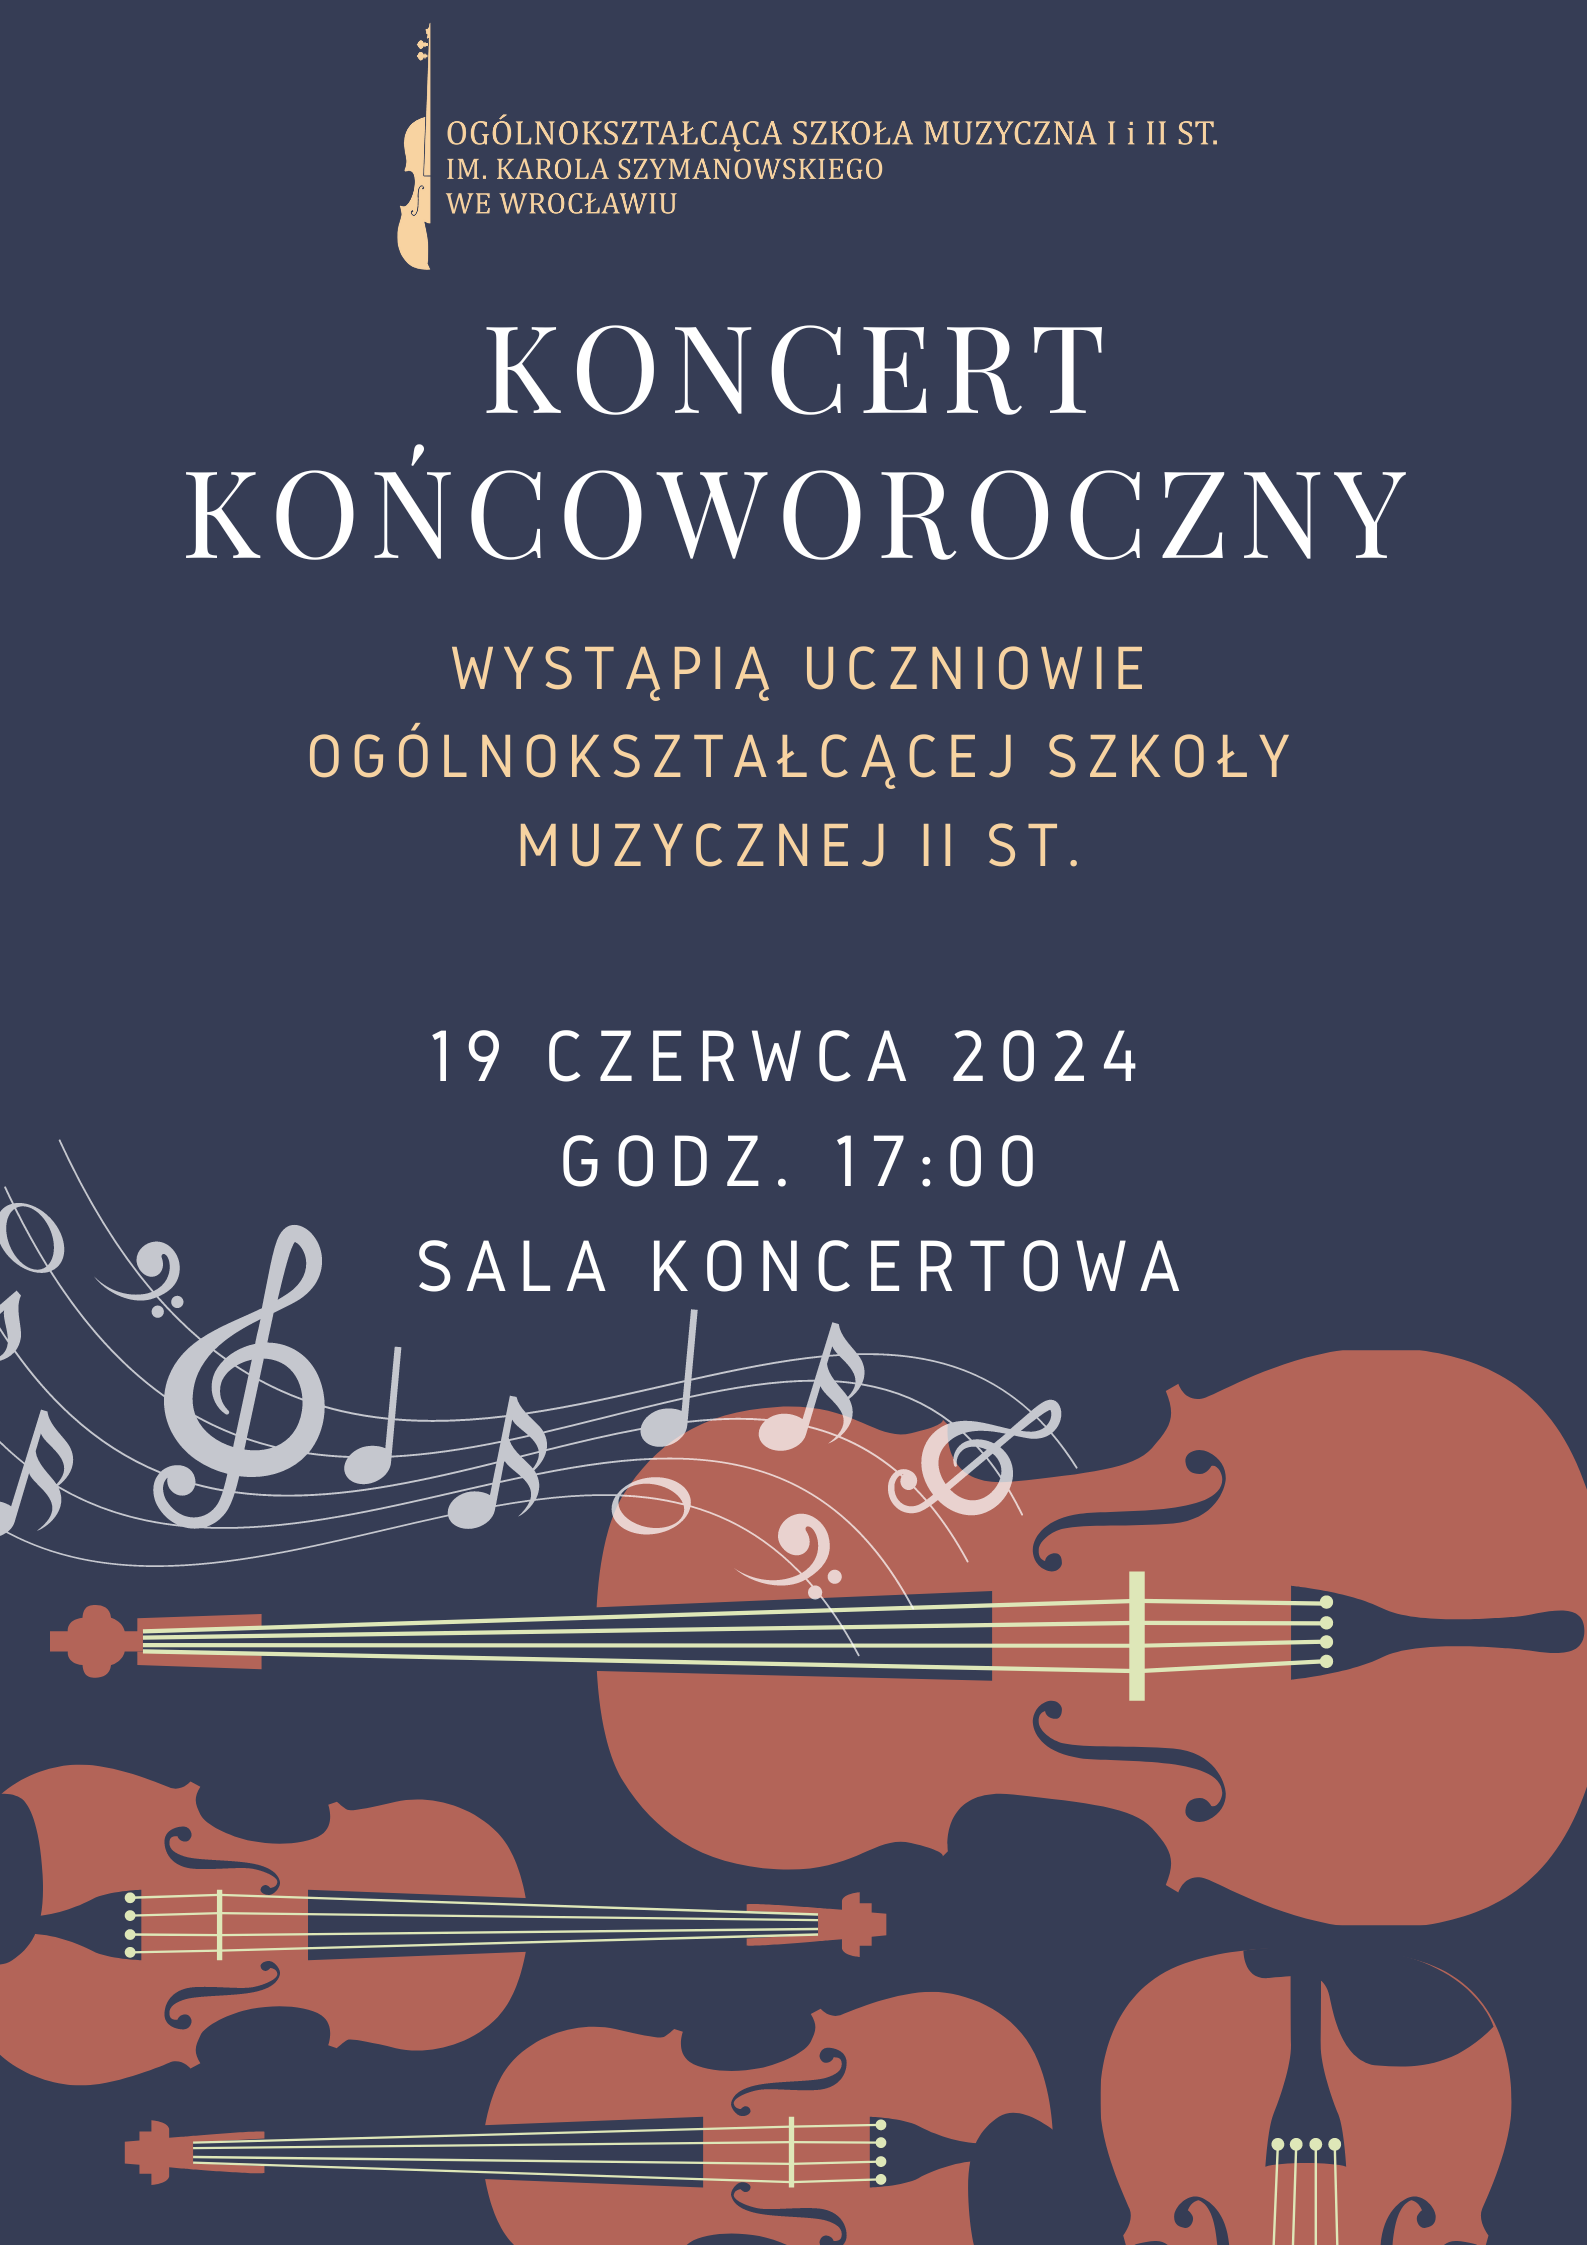 kolorowy plakat zawierający element graficzny- skrzypce oraz logo szkoły i tytuł koncertu